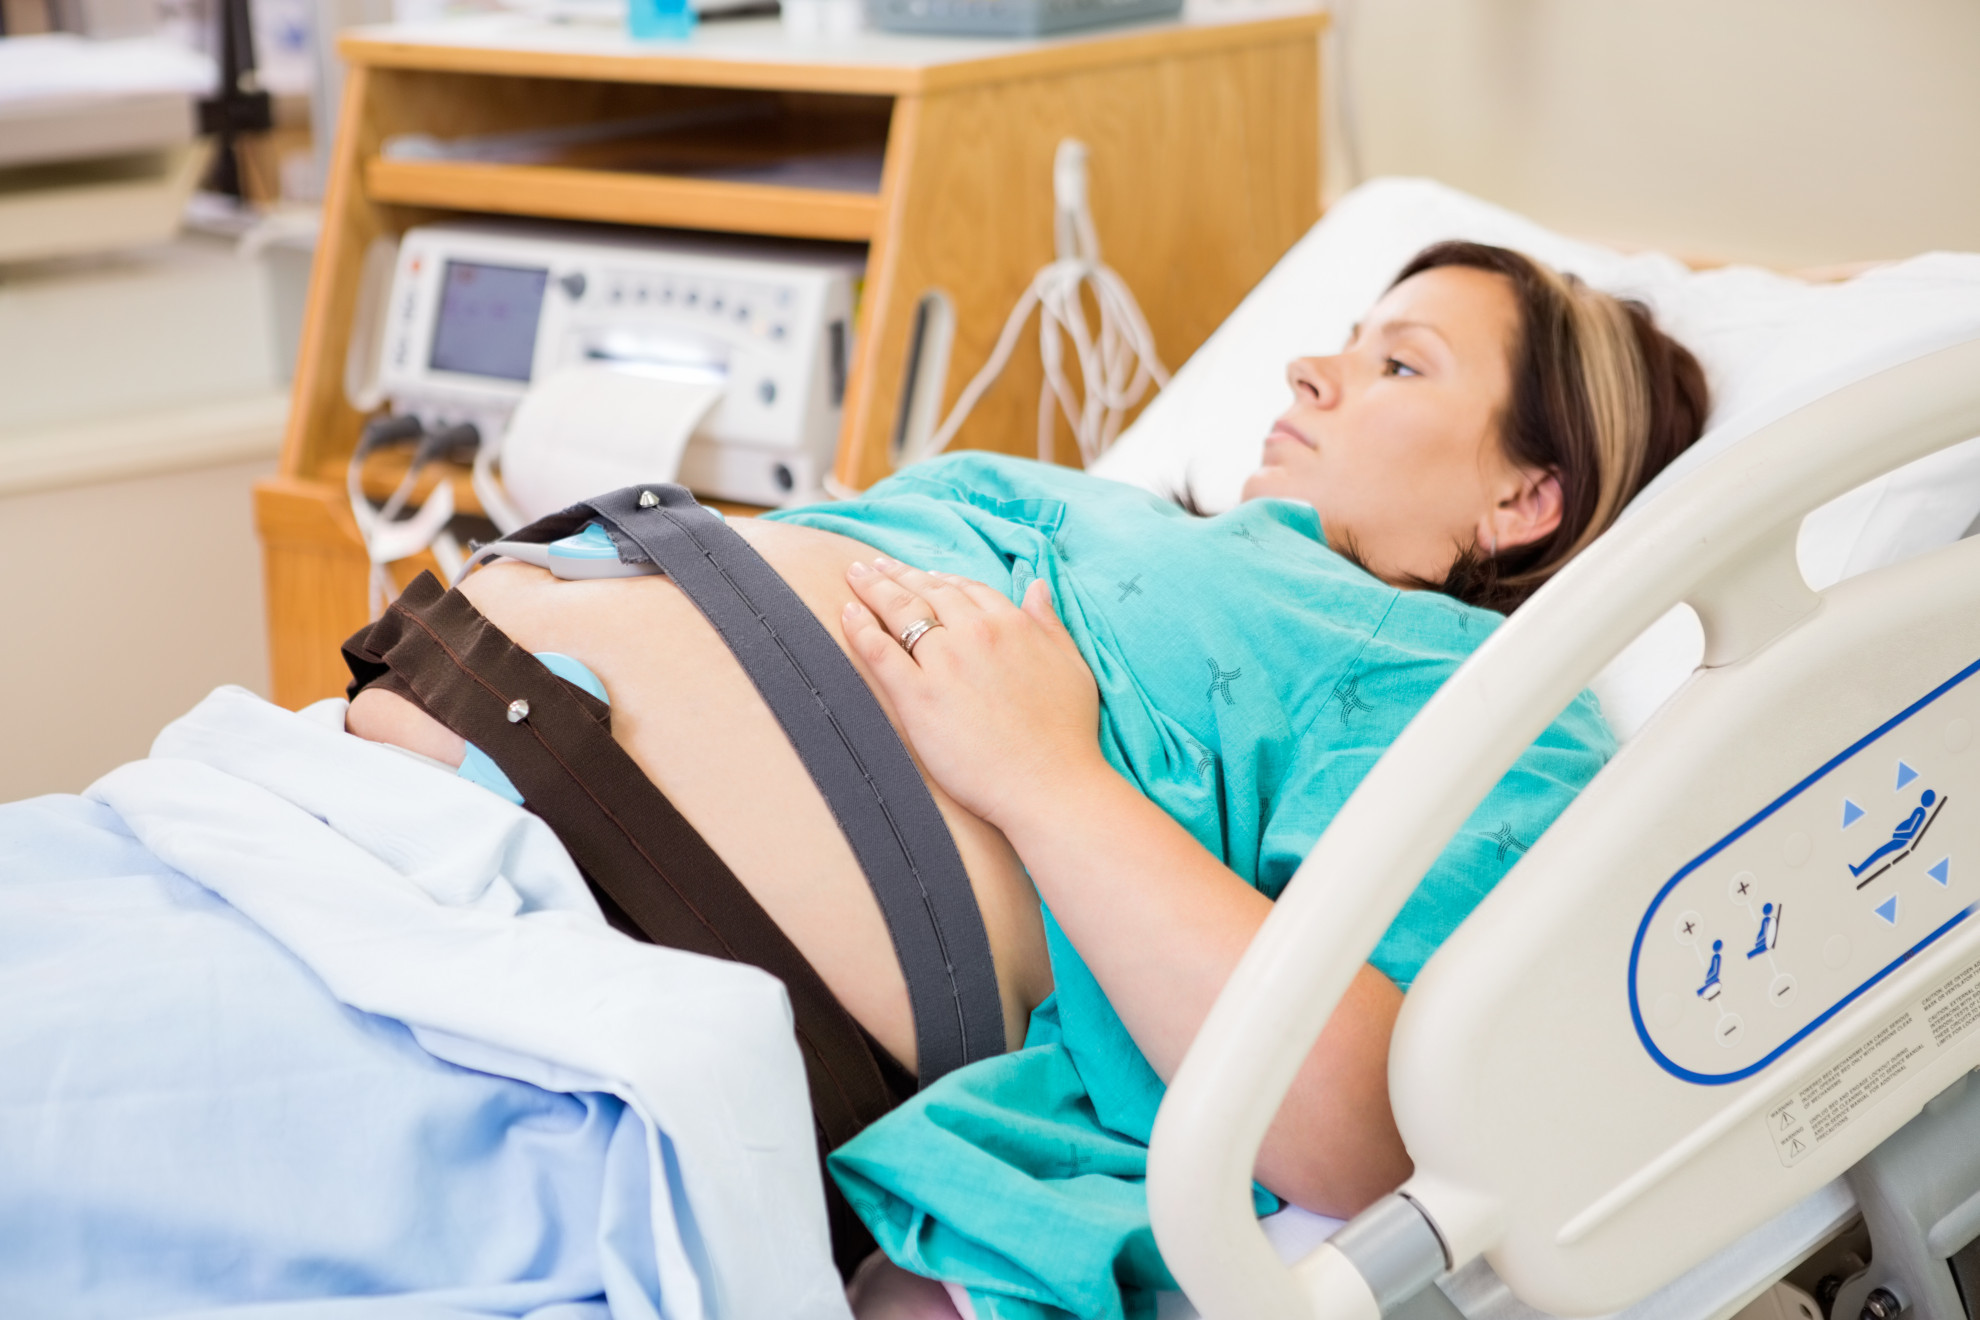 Monitorare il battito fetale: curiosità o necessità? - Ticinonline